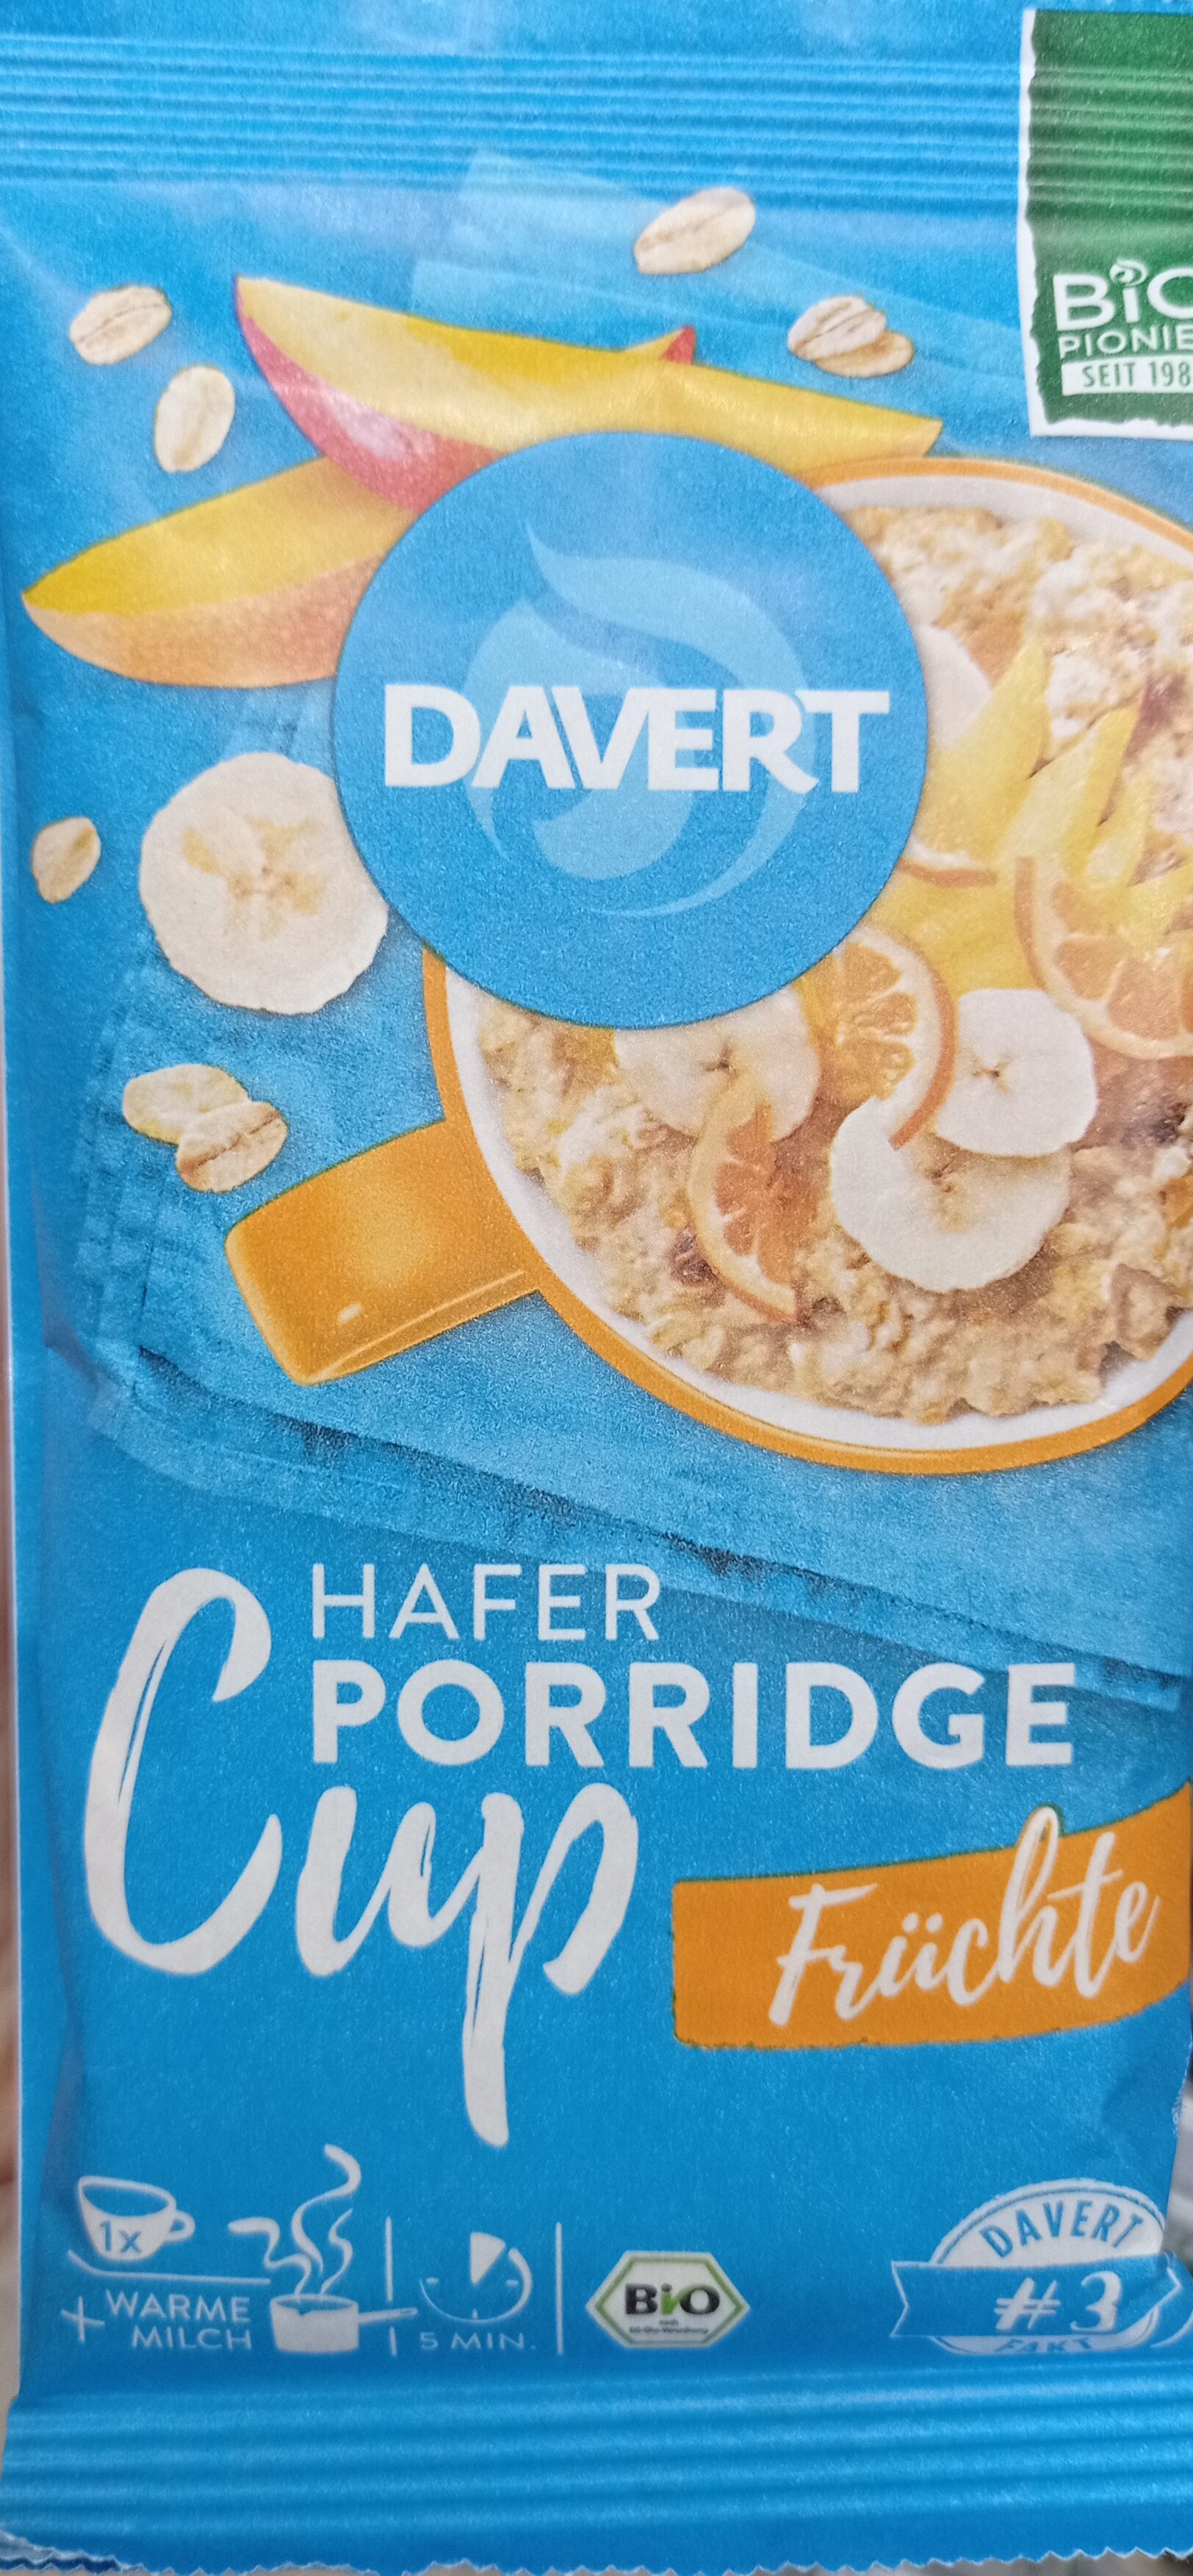 Porridge cup Früchte - Product - de